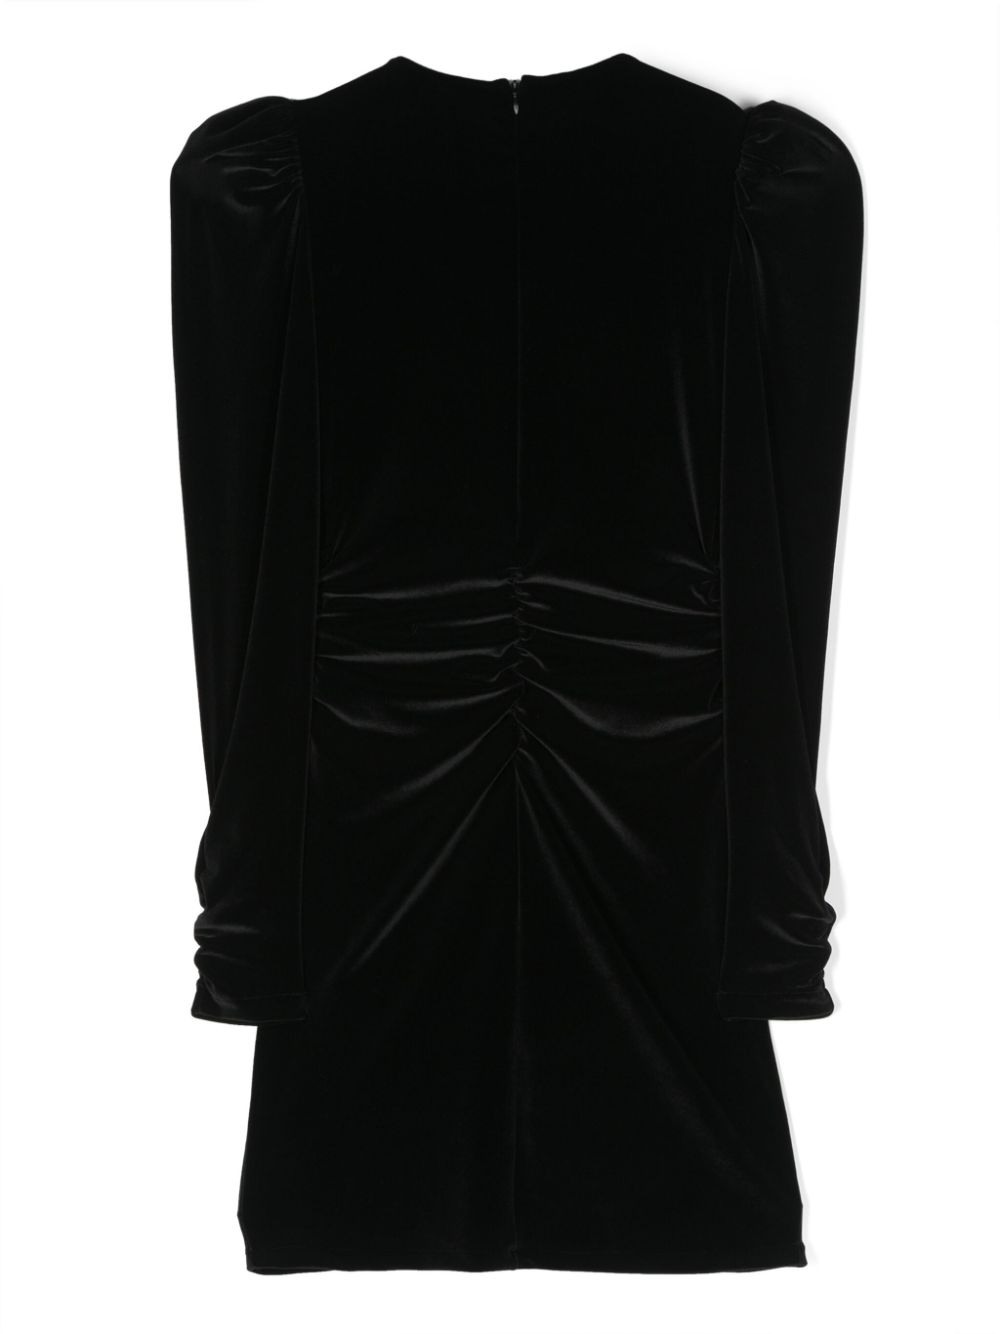 Black velvet dress for girls